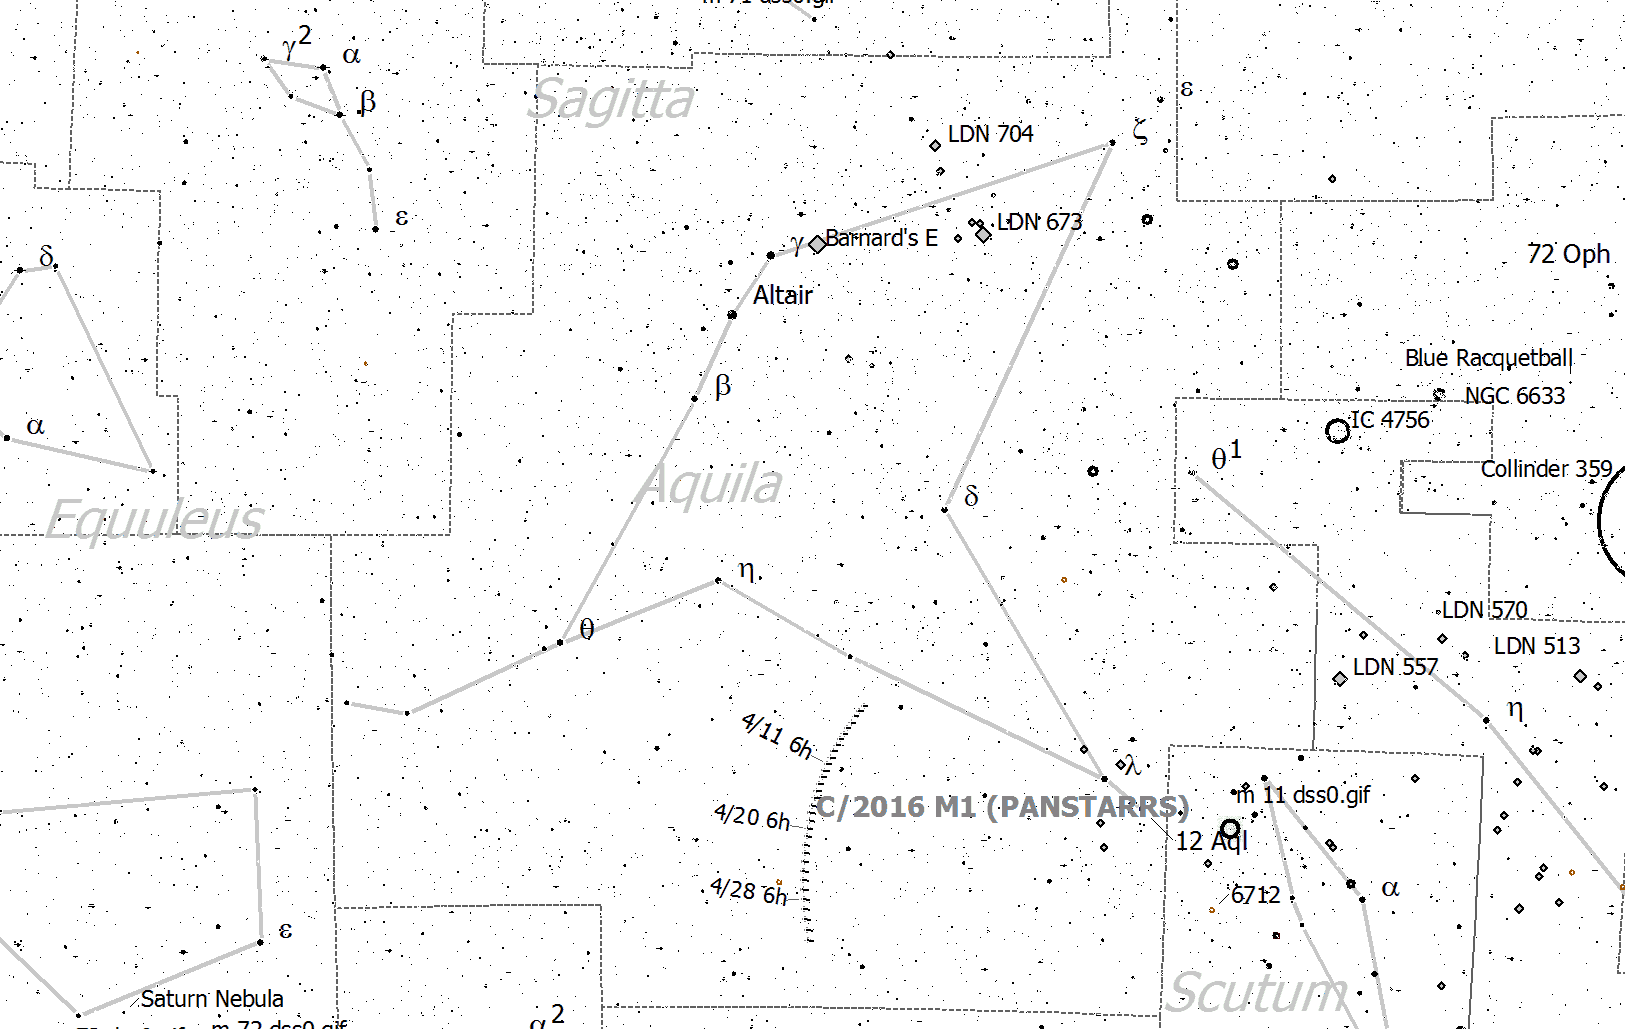 Localización del cometa C/2016 M1 (PANSTARRS) respecto a las constelaciones cercanas